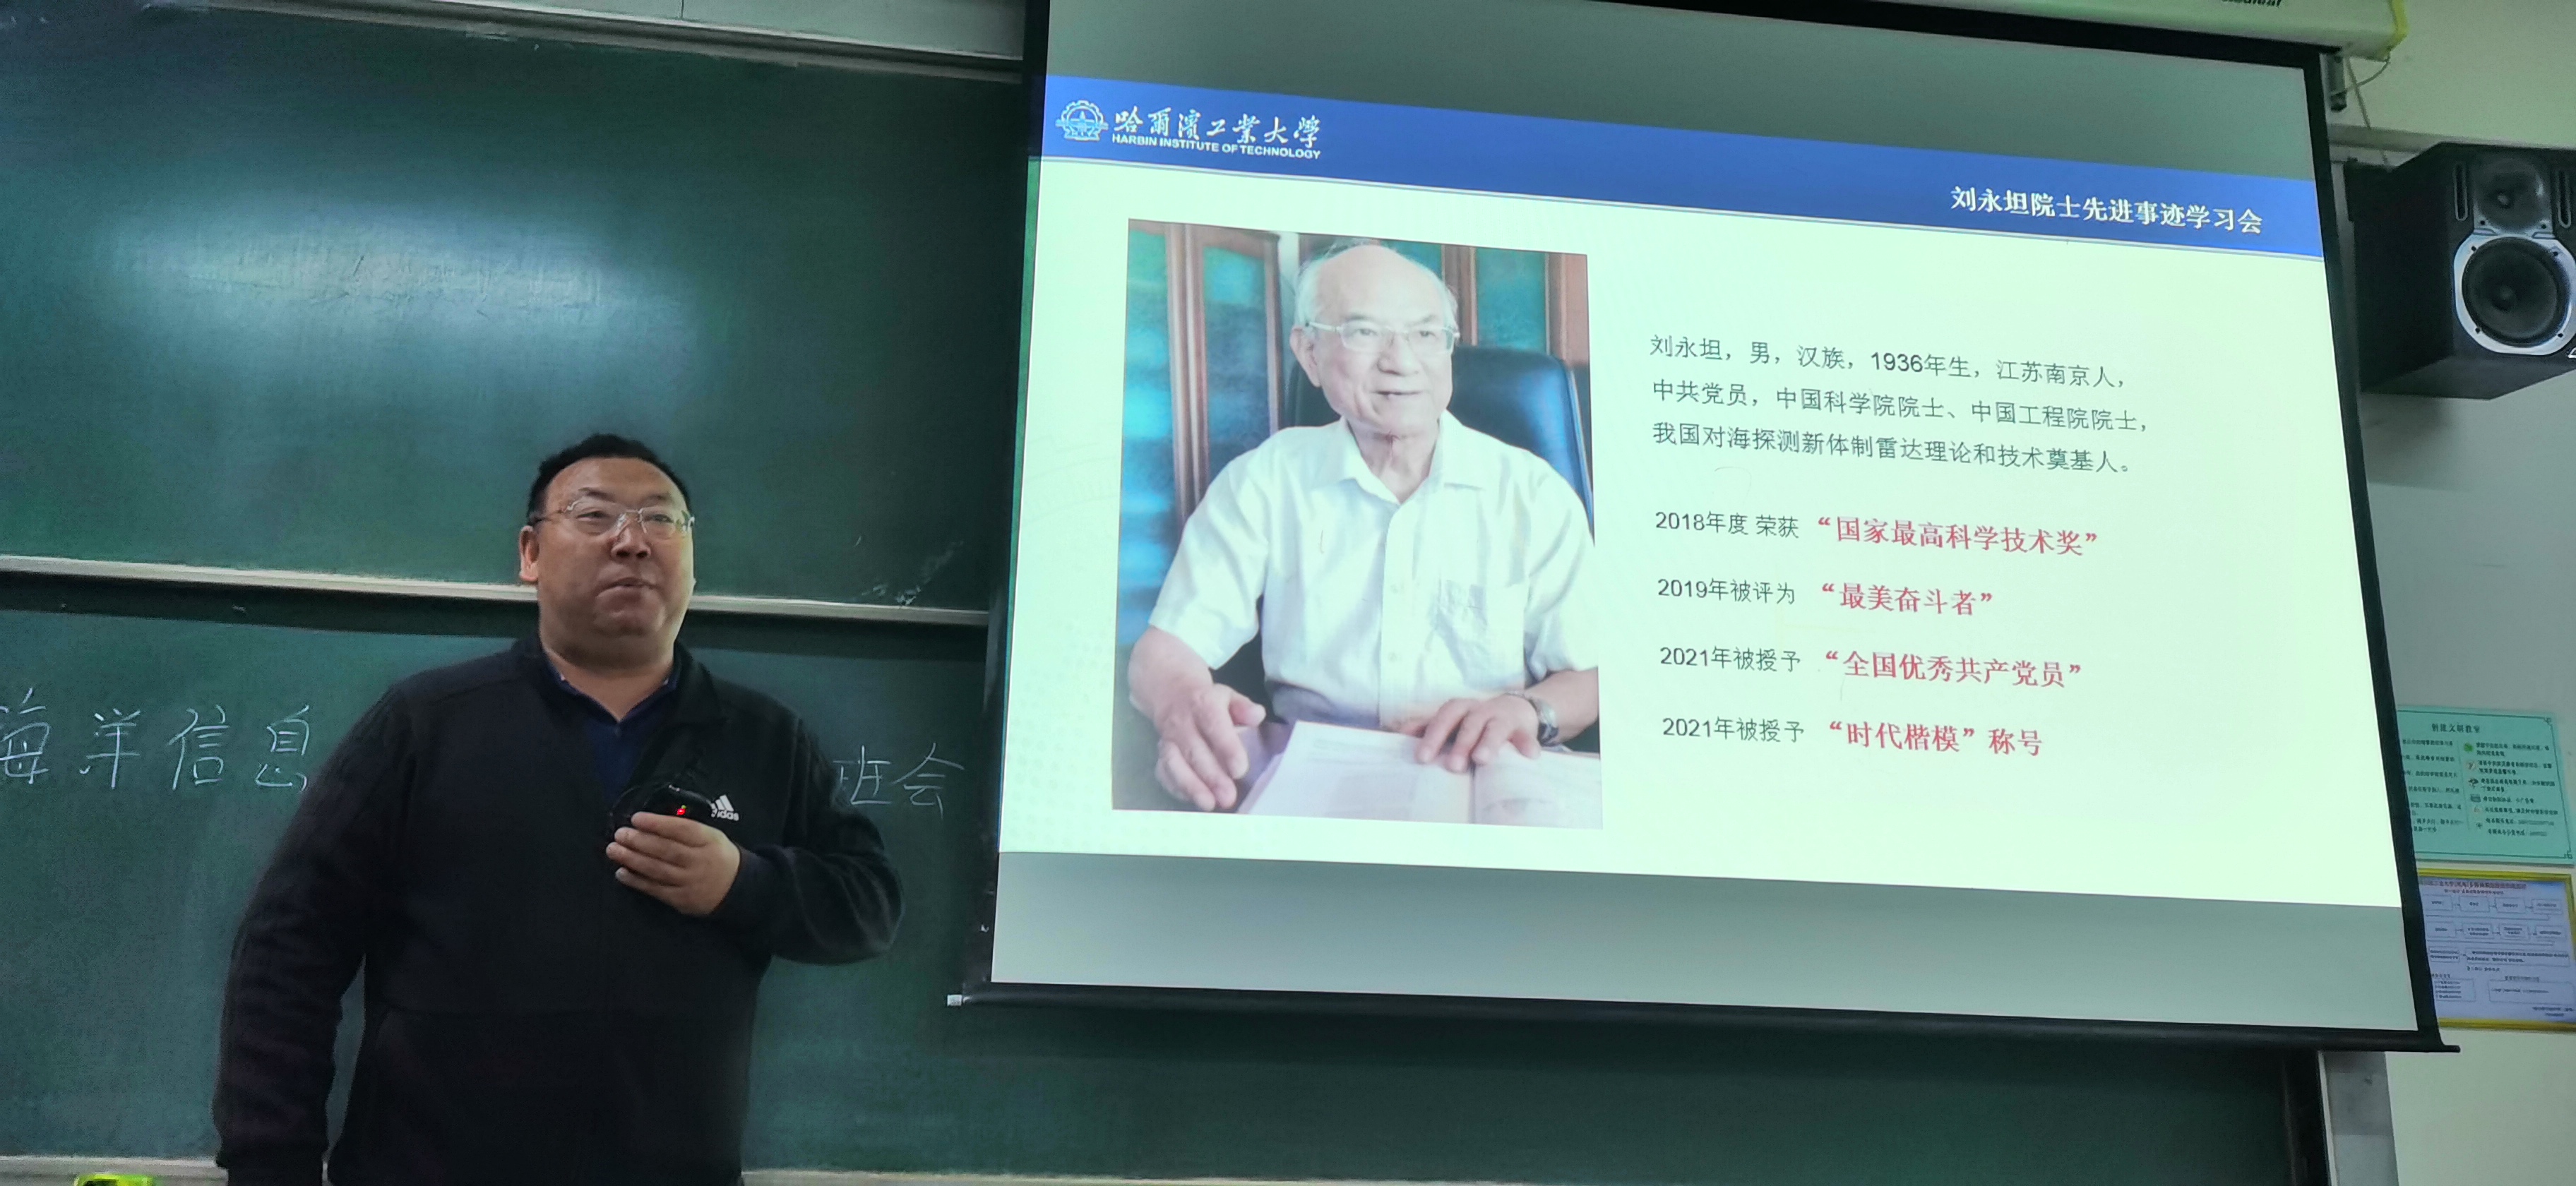 刘爱军书记为海洋信息工程专业学生宣讲.jpg